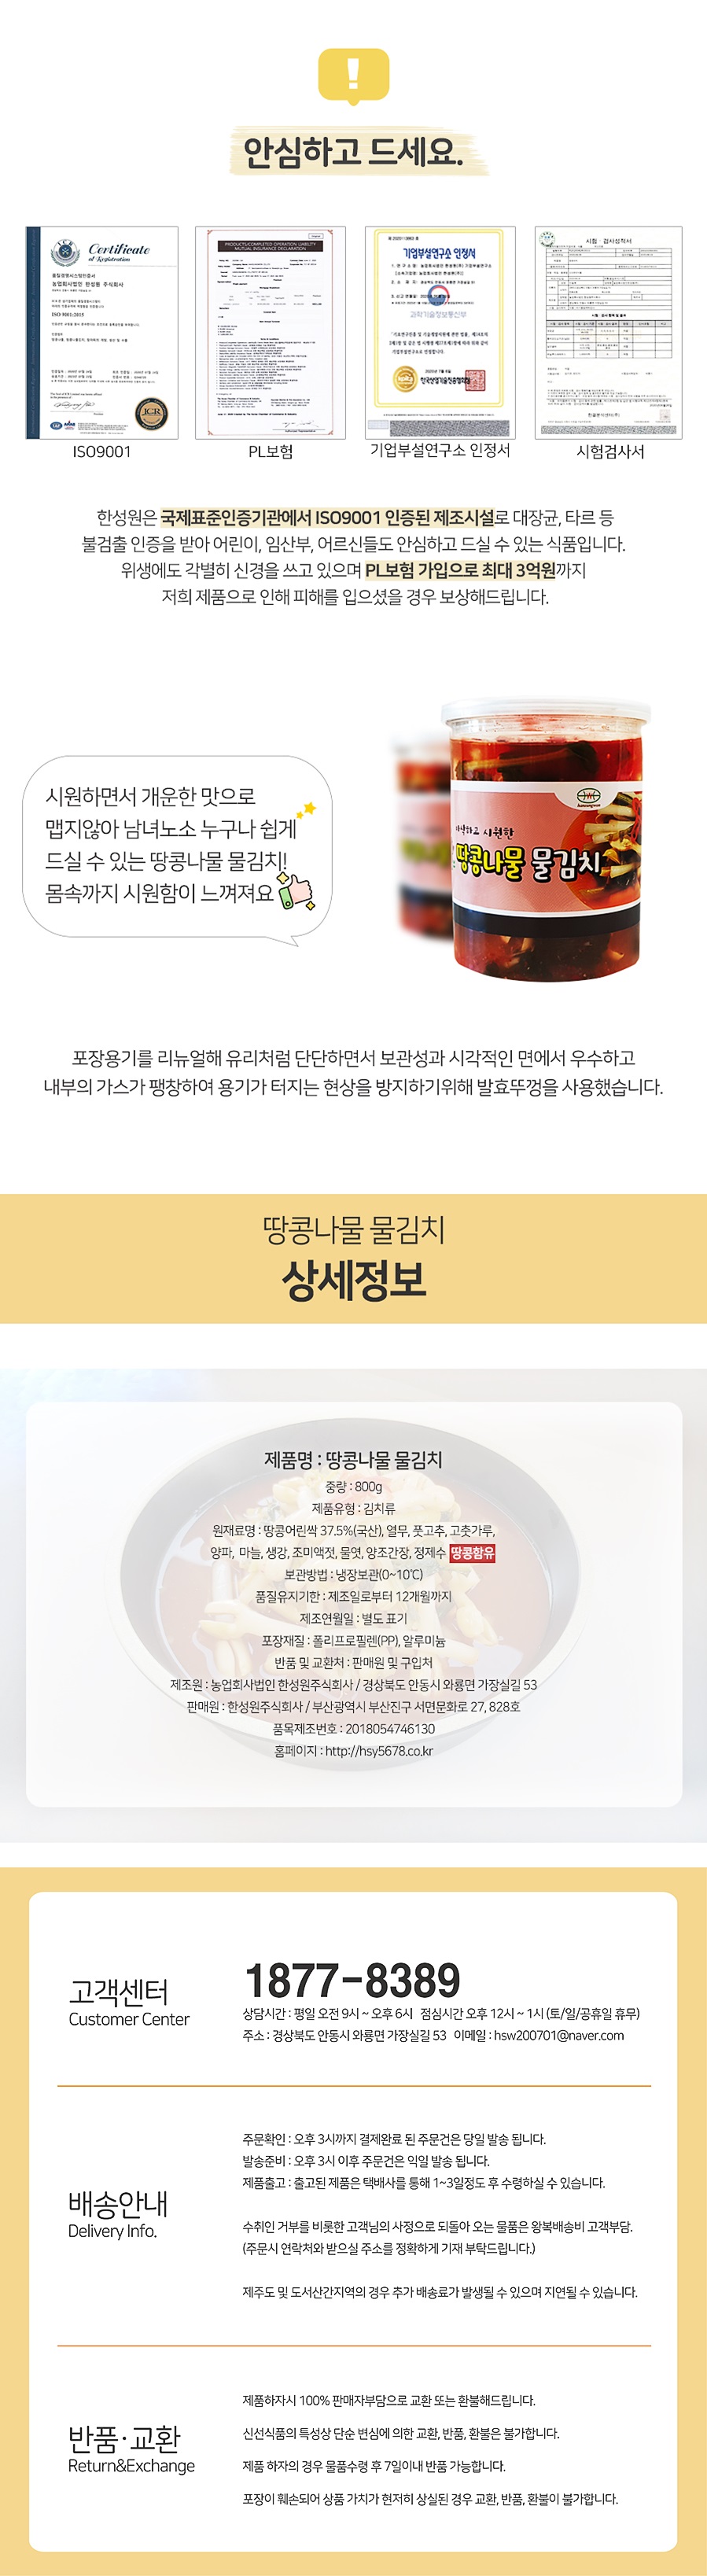 땅콩나물물김치_위메프3.jpg